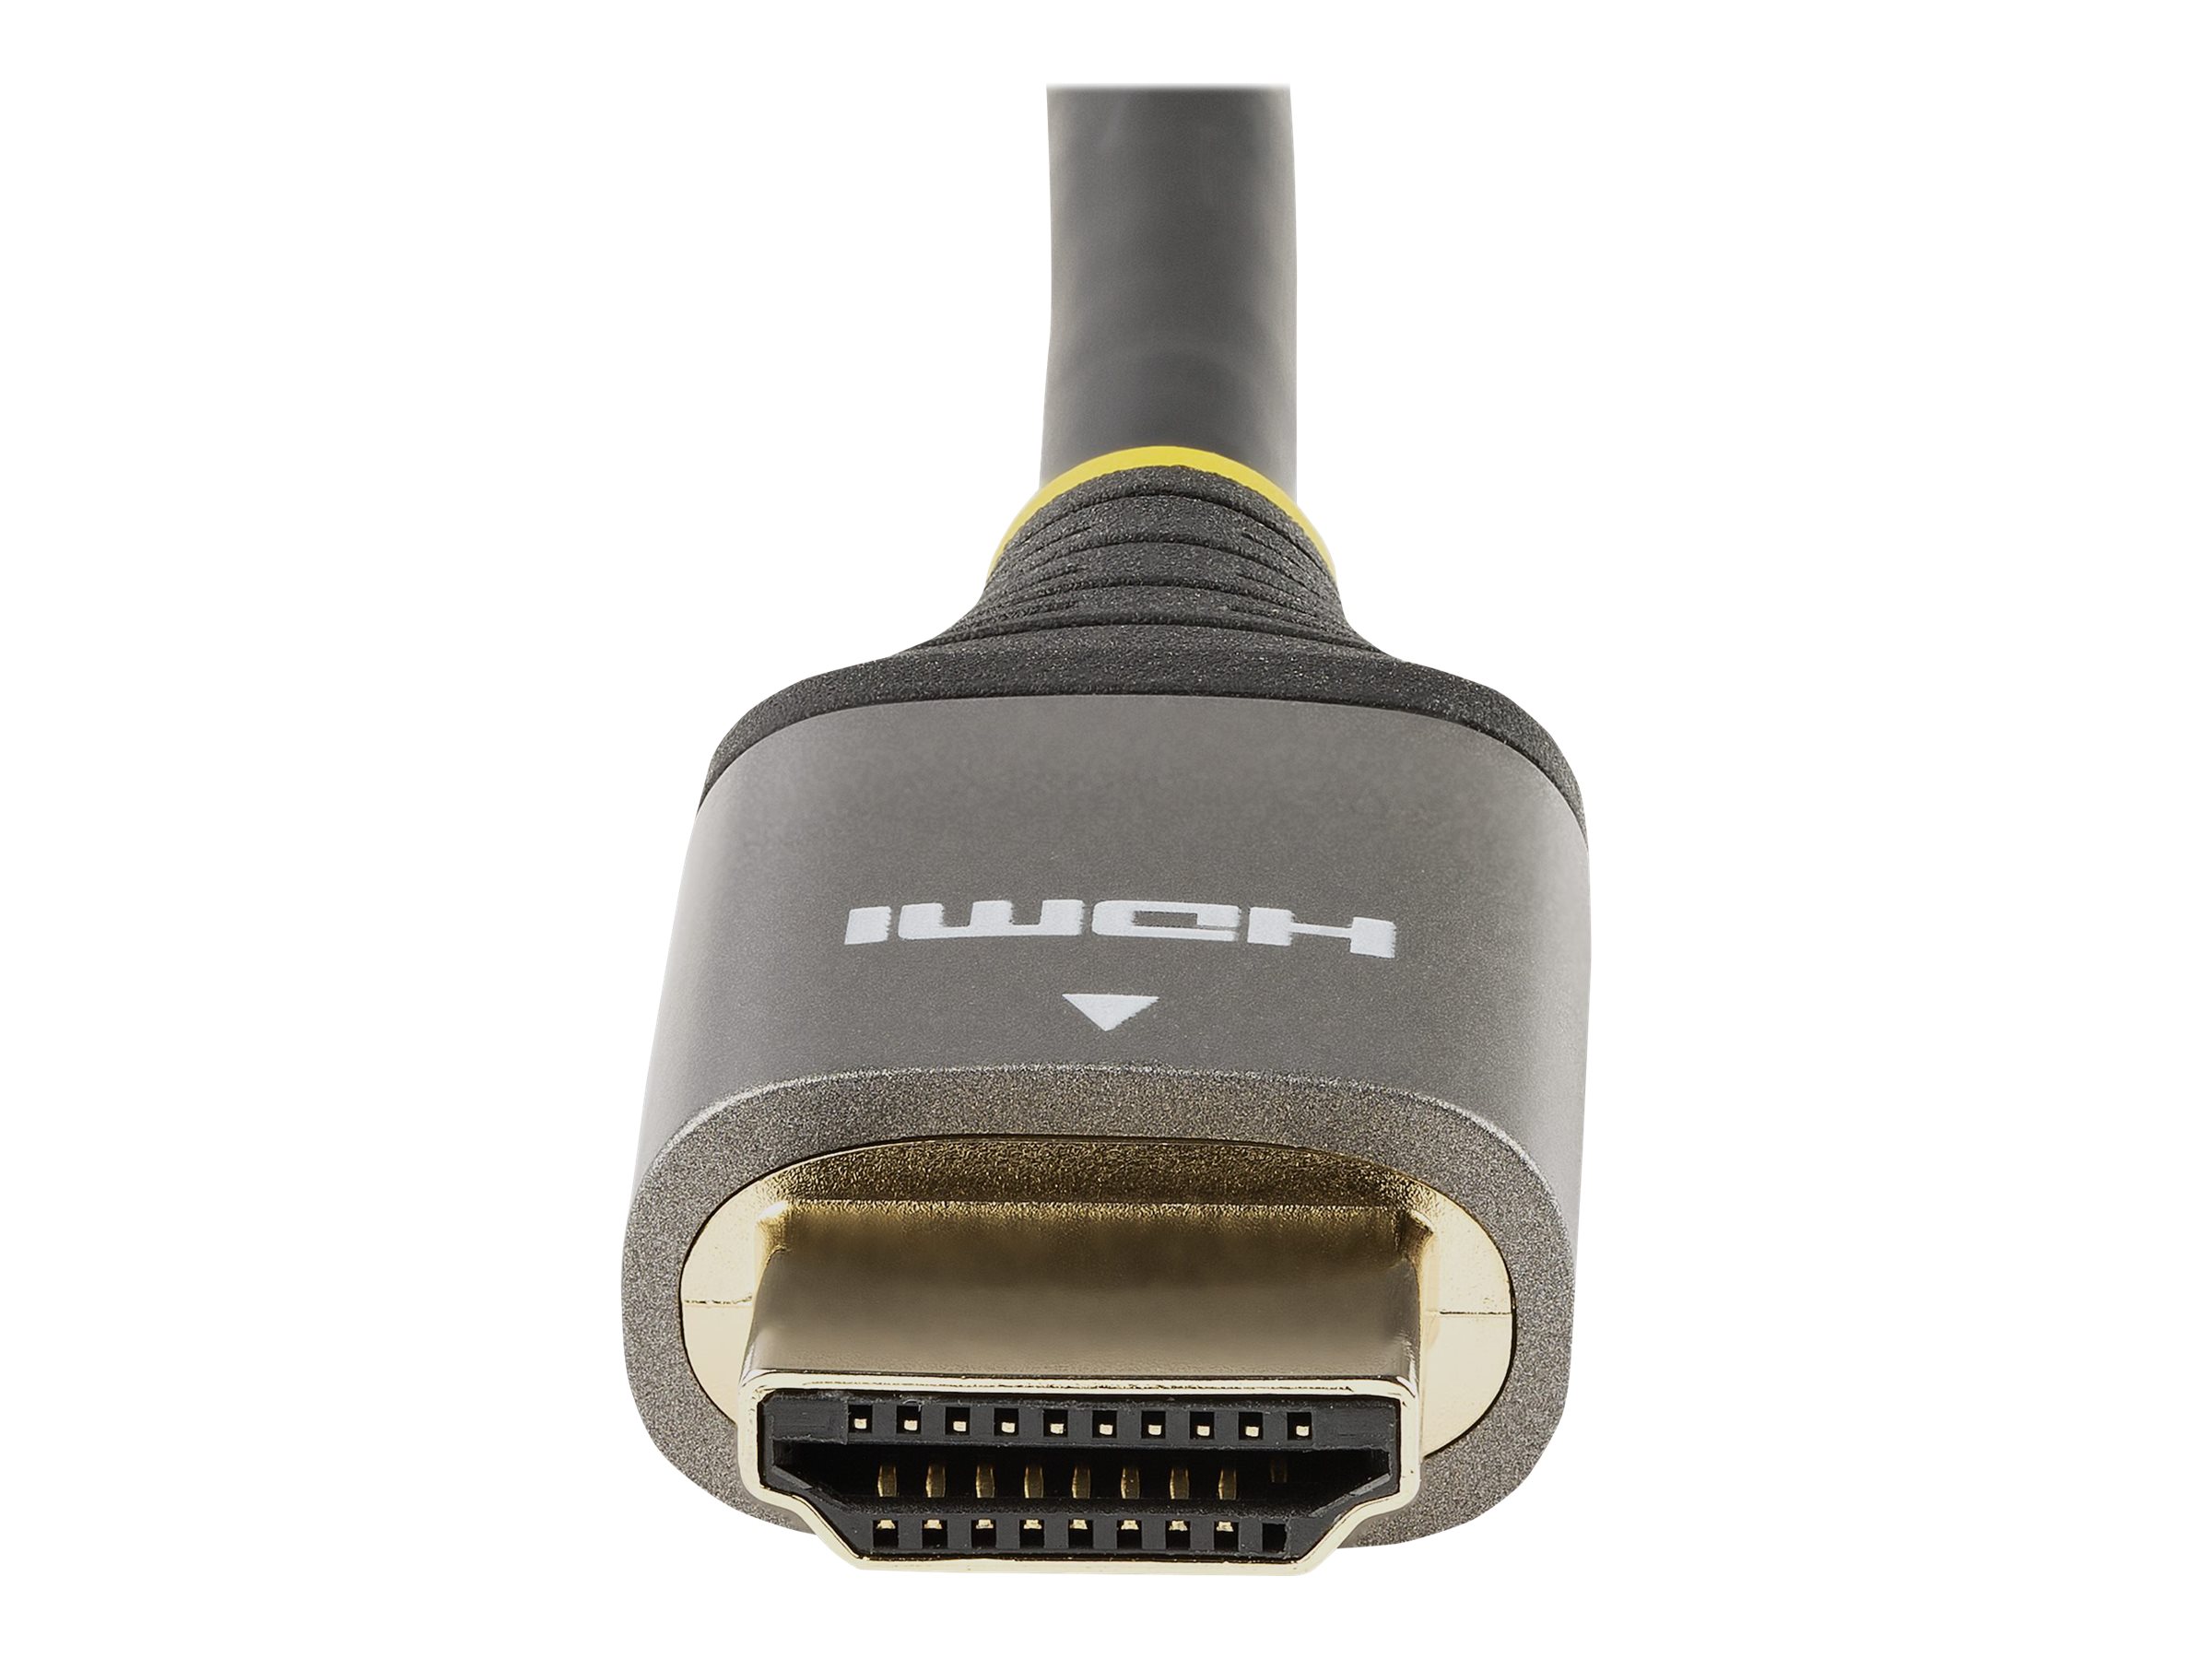 StarTech.com Câble HDMI 2.1 8K - 1m - Câble HDMI Certifié Ultra High Speed 48Gbps - 8K 60Hz/4K 120Hz HDR10+ eARC - Câble Ultra HD 8K HDMI - Écran/TV/Affichage - Gaine Flexible TPE (HDMM21V1M) - Ultra High Speed - câble HDMI avec Ethernet - HDMI mâle pour HDMI mâle - 1 m - double blindage - gris, noir - passif, support 4K 120 Hz, support pour 8K60Hz - pour P/N: 4PORT-8K-HDMI-SWITCH - HDMM21V1M - Câbles HDMI